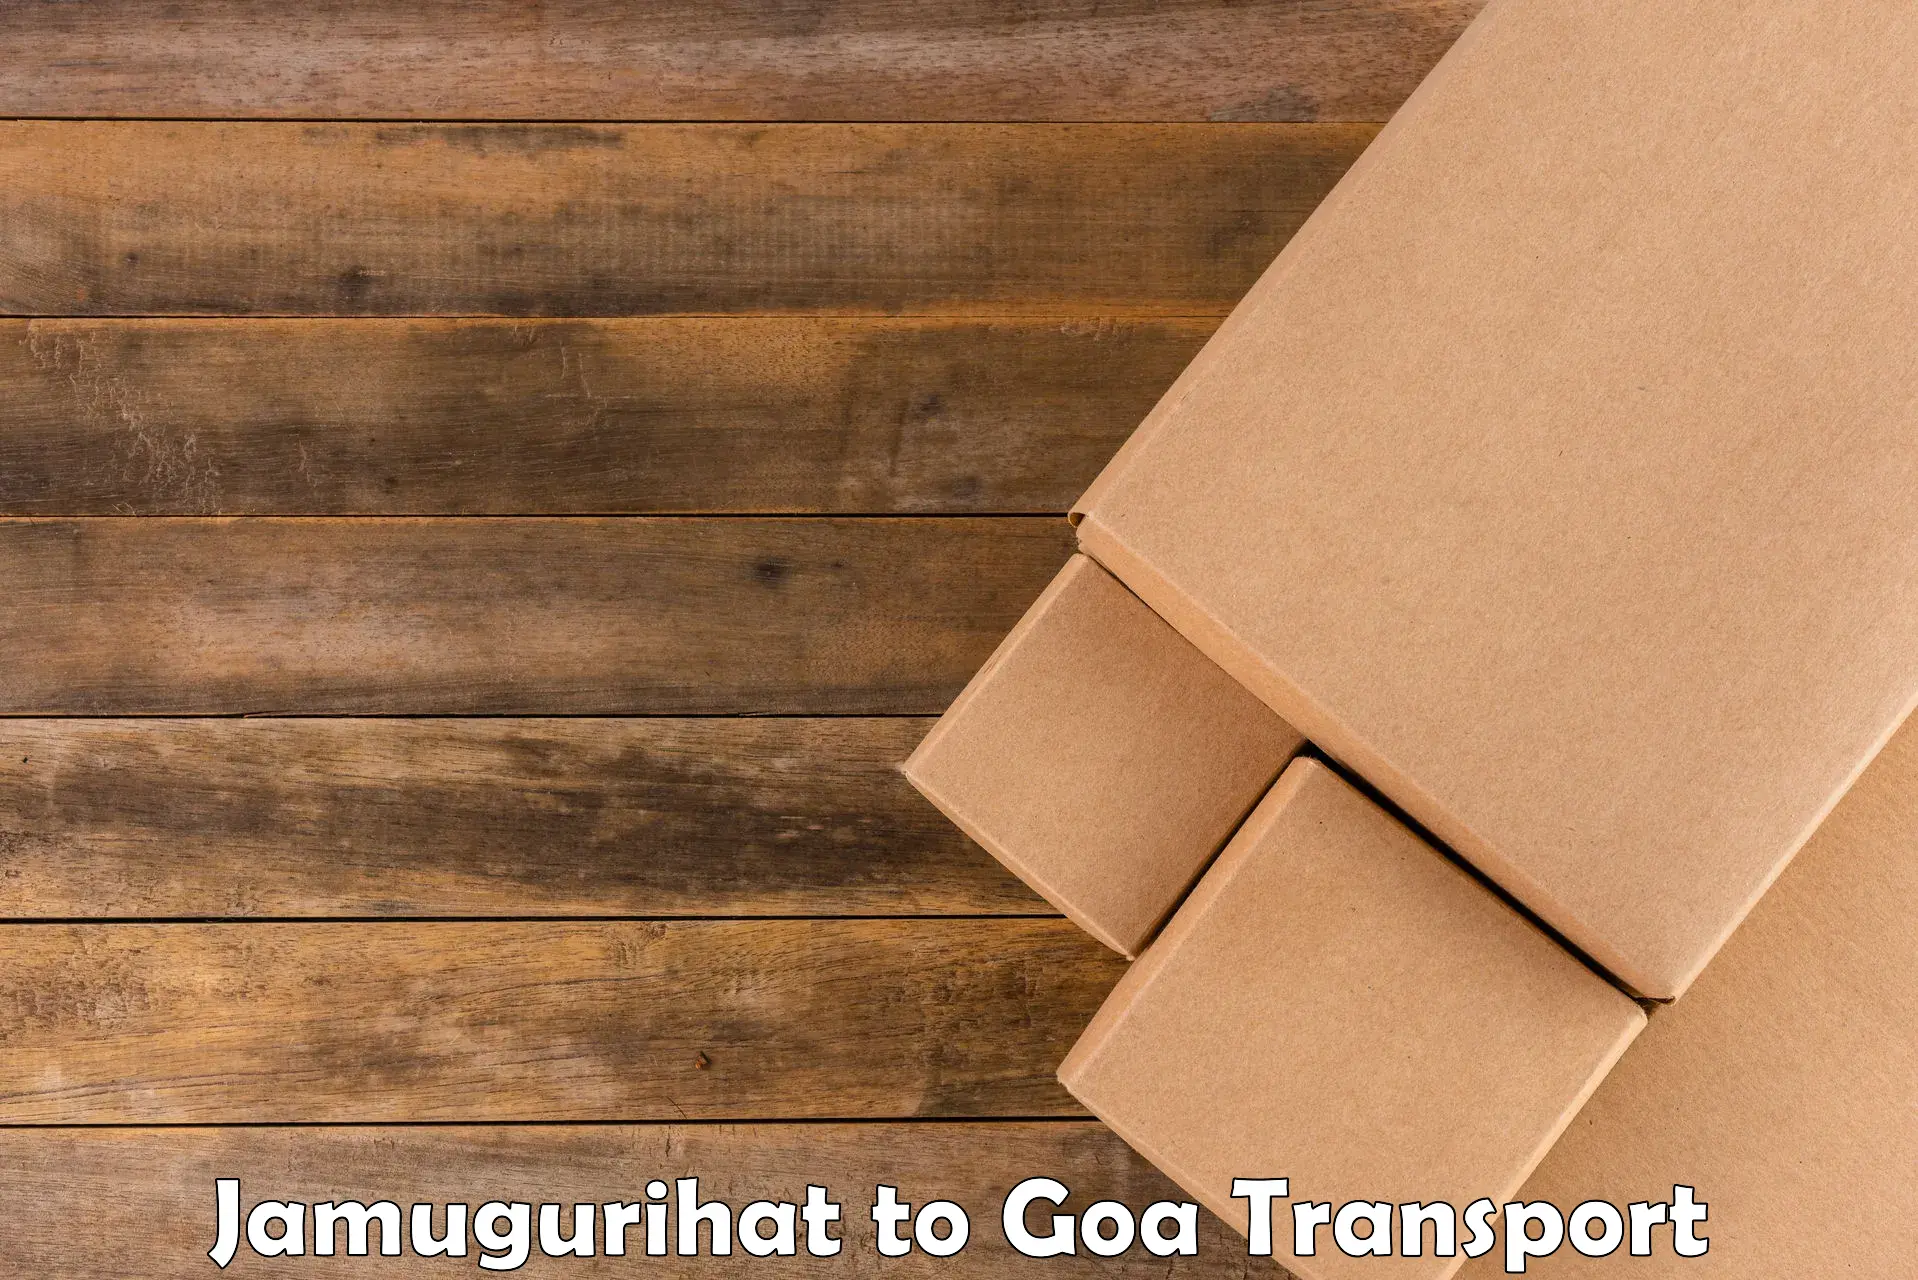 Transportation services Jamugurihat to Goa University